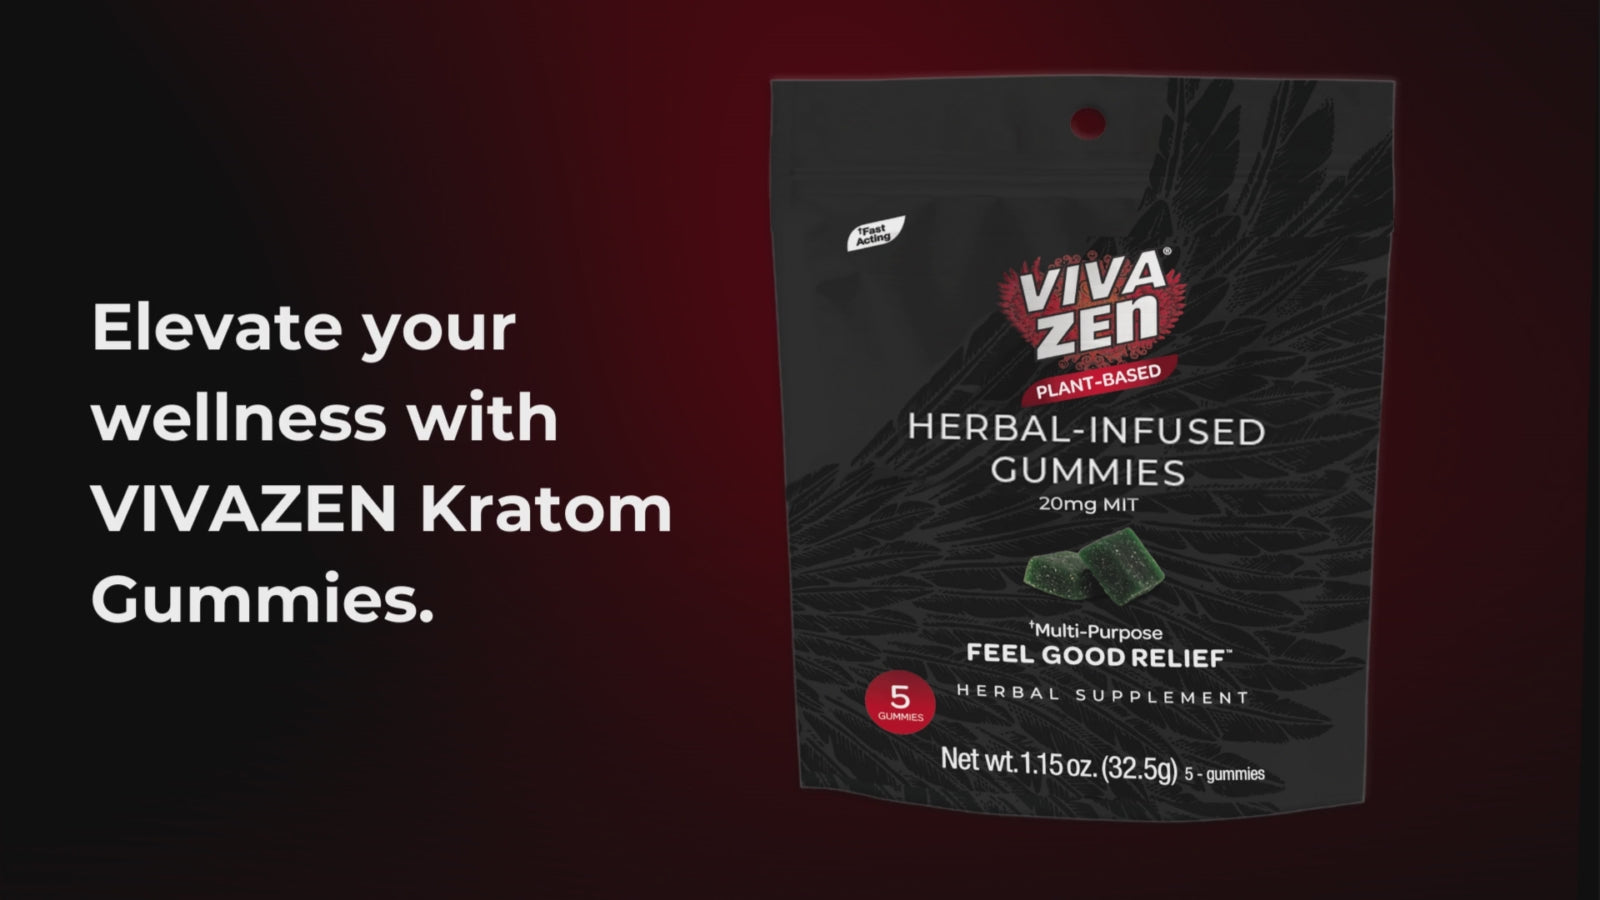 Load video: VivaZen Herbal Infused Kratom Gummies elevate your wellness with vivazen kratom gummies